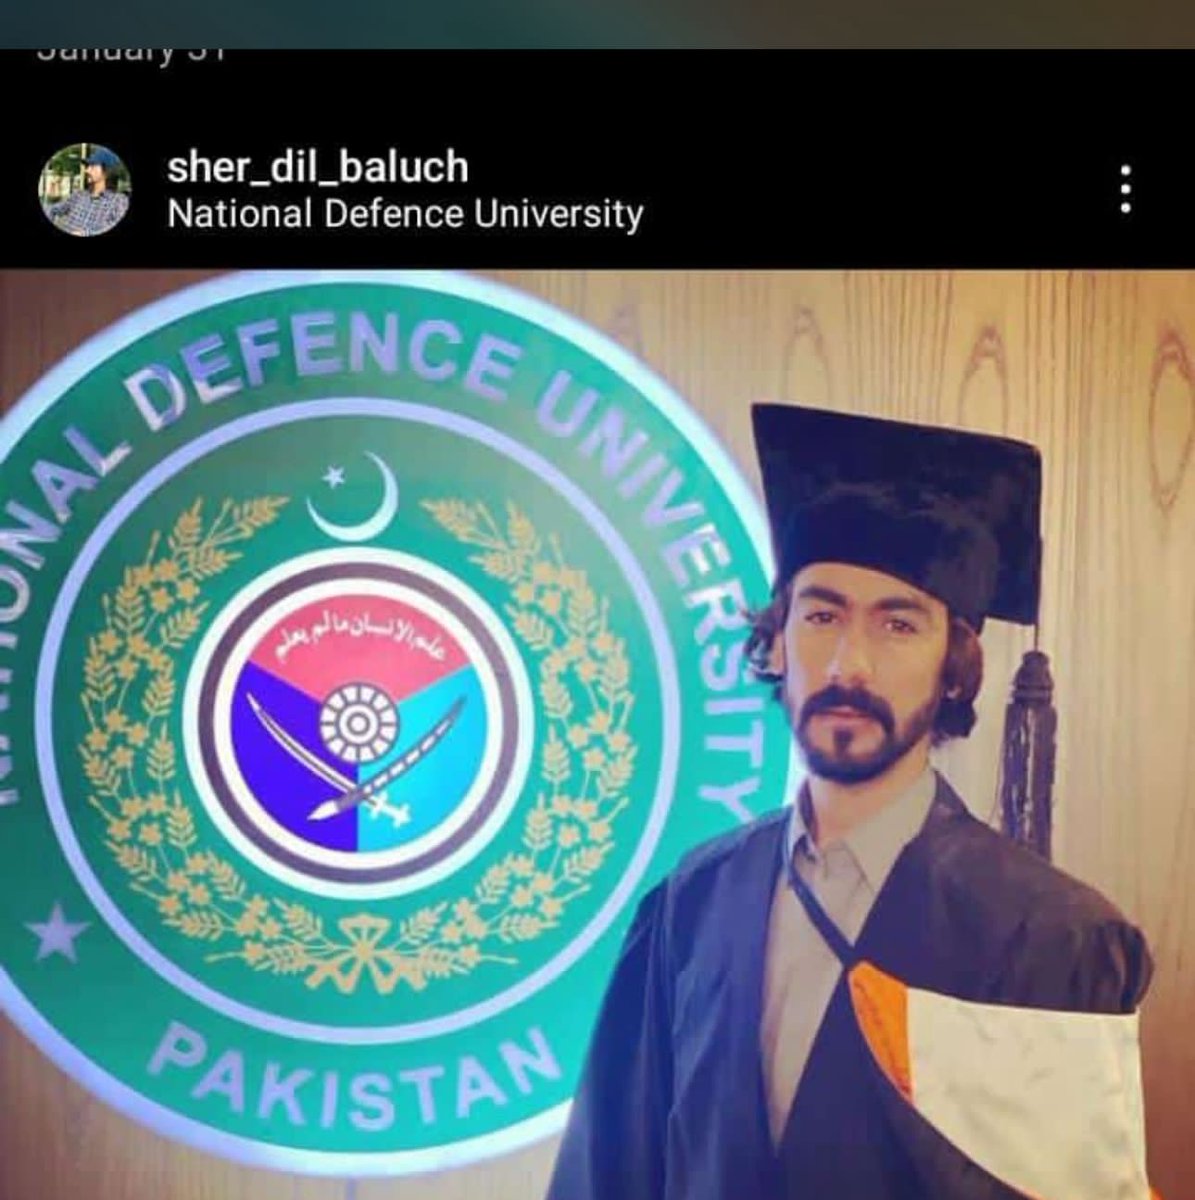 نیشنل ڈیفنس یونیورسٹی اسلام آباد میں ائی آ ر کے طالب علم شیر دل بلوچ کو کل رات پنجگور بلوچستان میں گھر سے لاپتہ کر دیا گیا۔یونیورسٹی انتظامیہ سے اپیل ہے کہ زاتی دلچسپی لے کر اپنے سٹوڈنٹ کا معاملہ حل کریں
#NDU #NationalDefenceUniversity #ReleaseSherdilBaloch 
@IRDeptNDU